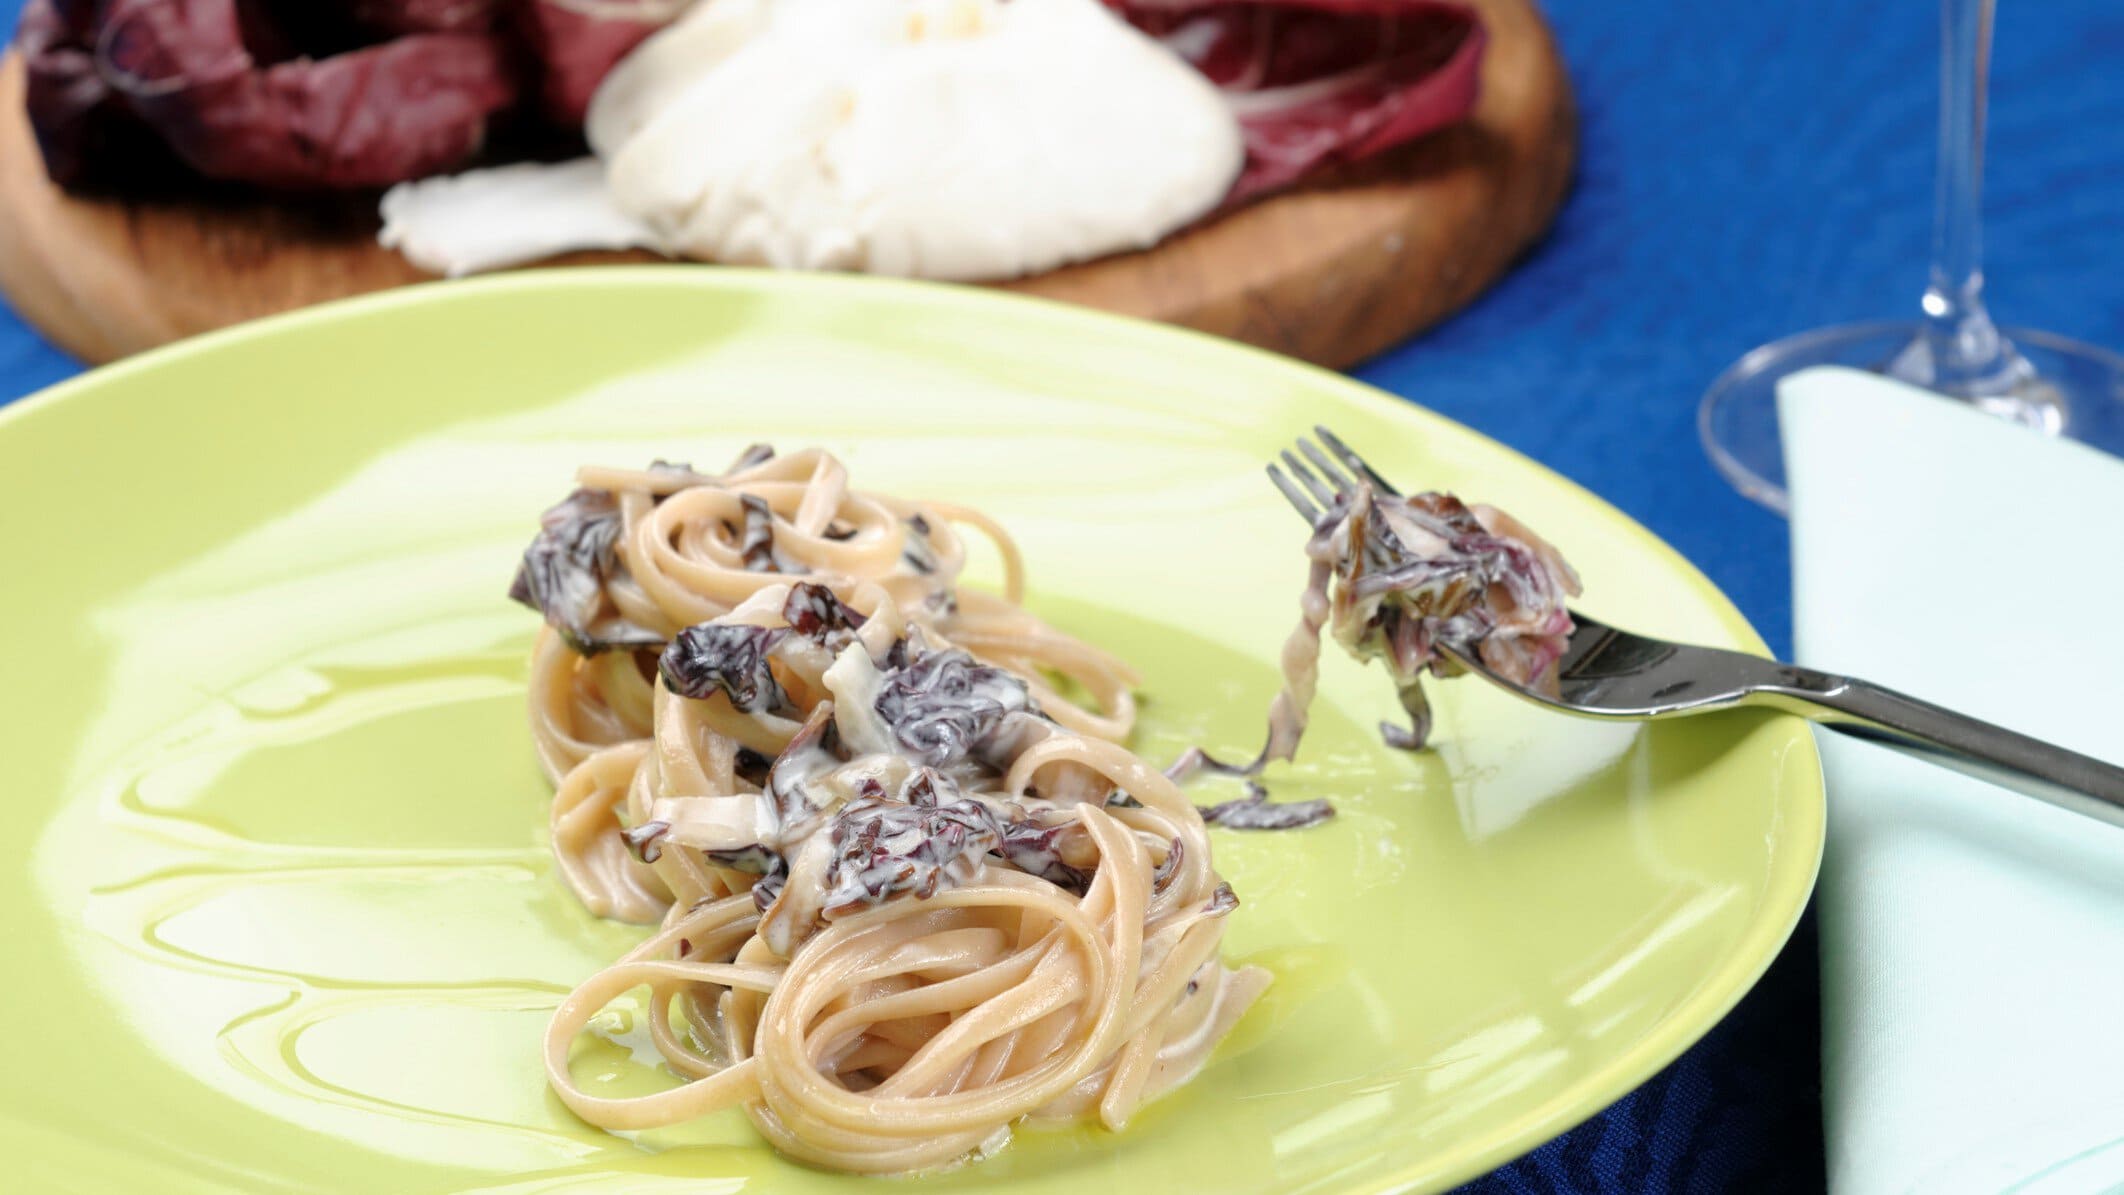 Pasta mit Radicchio und Ziegenfrischkäse auf gelbem Teller mit Gabel. Im Bild Holzbrett mit Radicchio und Ziegenfrischkäse. Draufsicht.